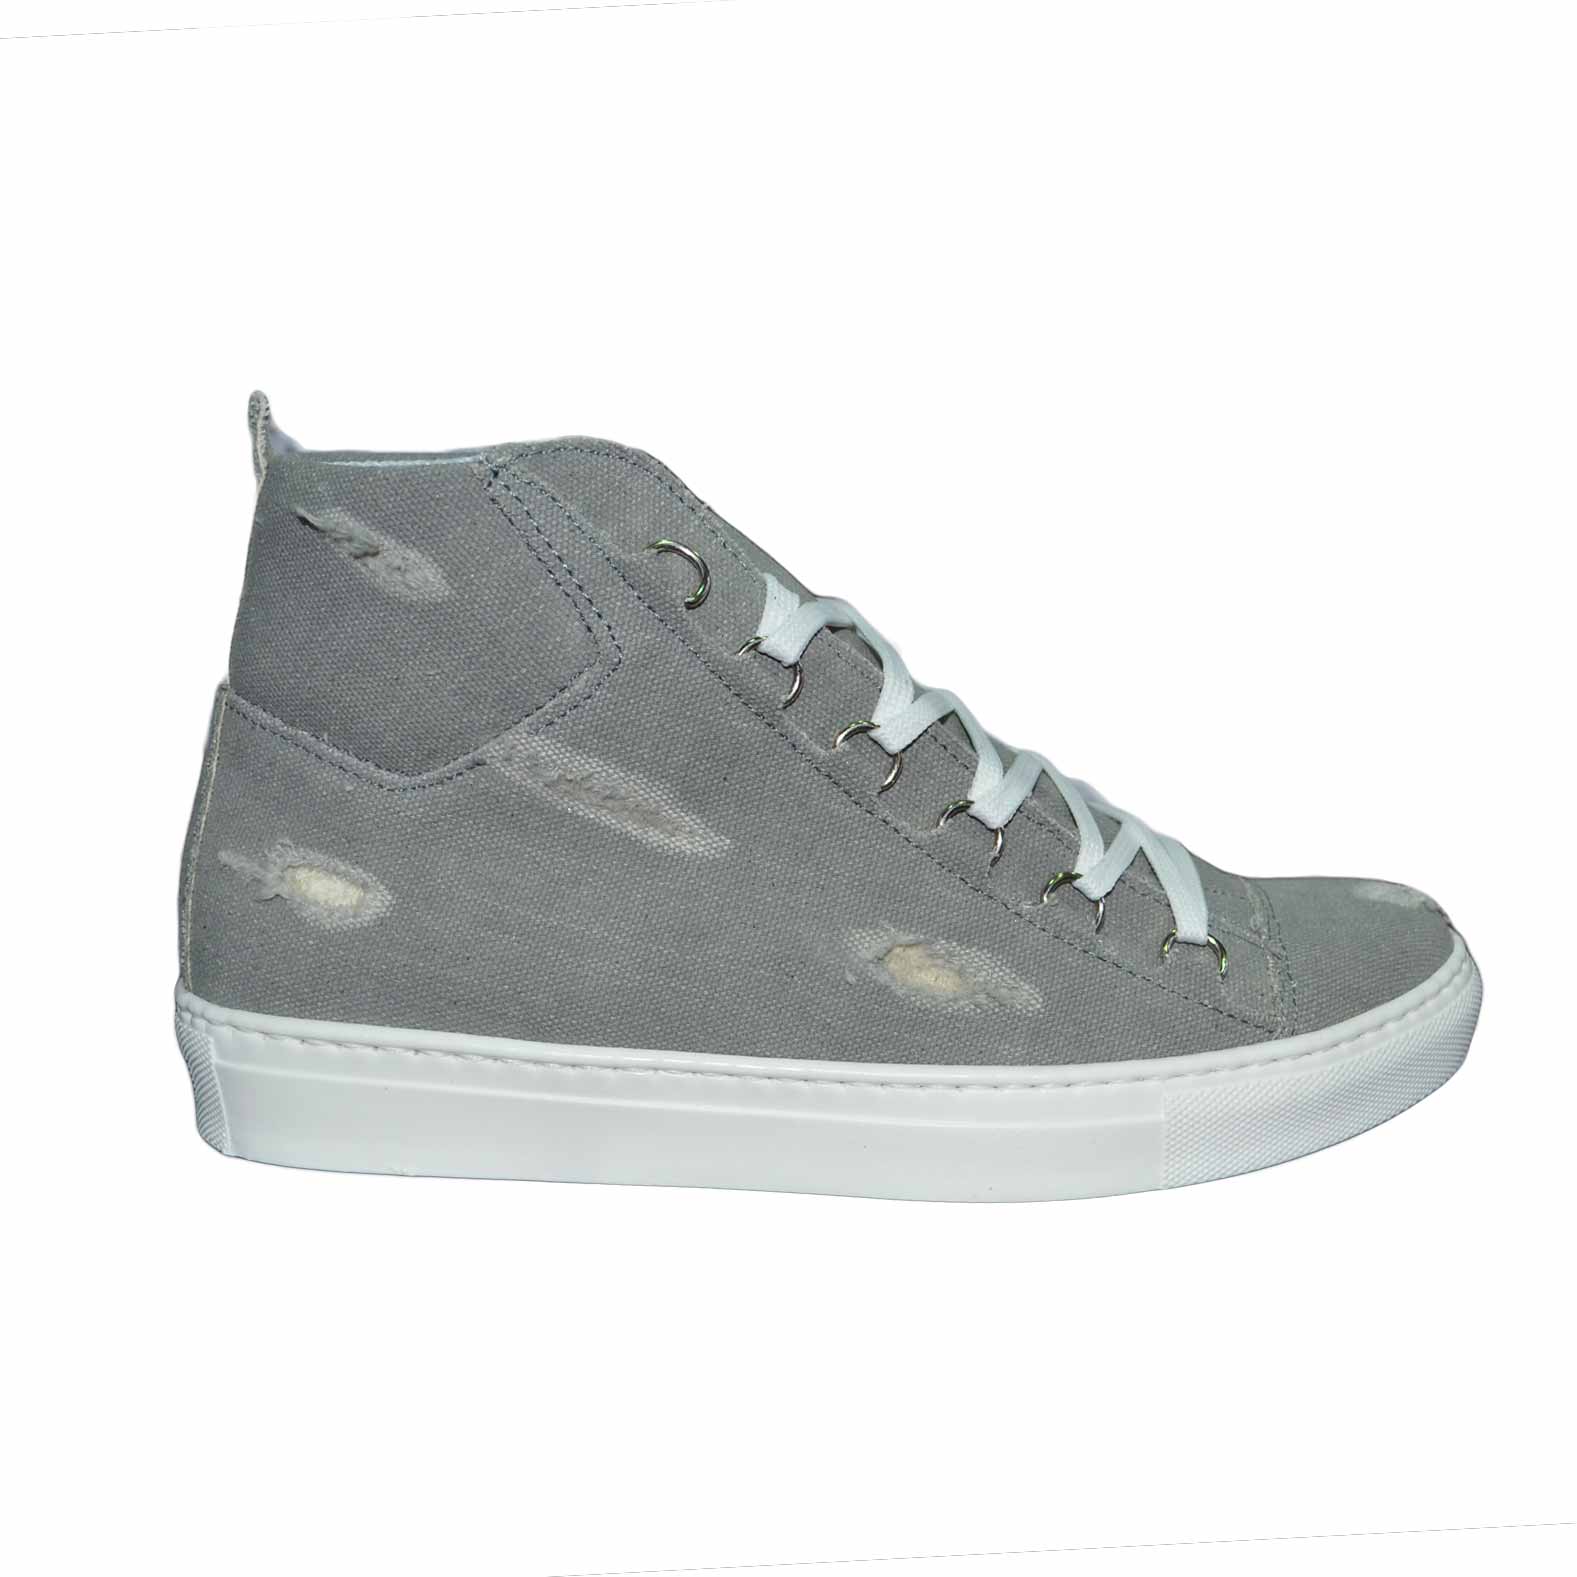 Sneakers uomo scarpe jeans grigio strappi stringata made in italy.